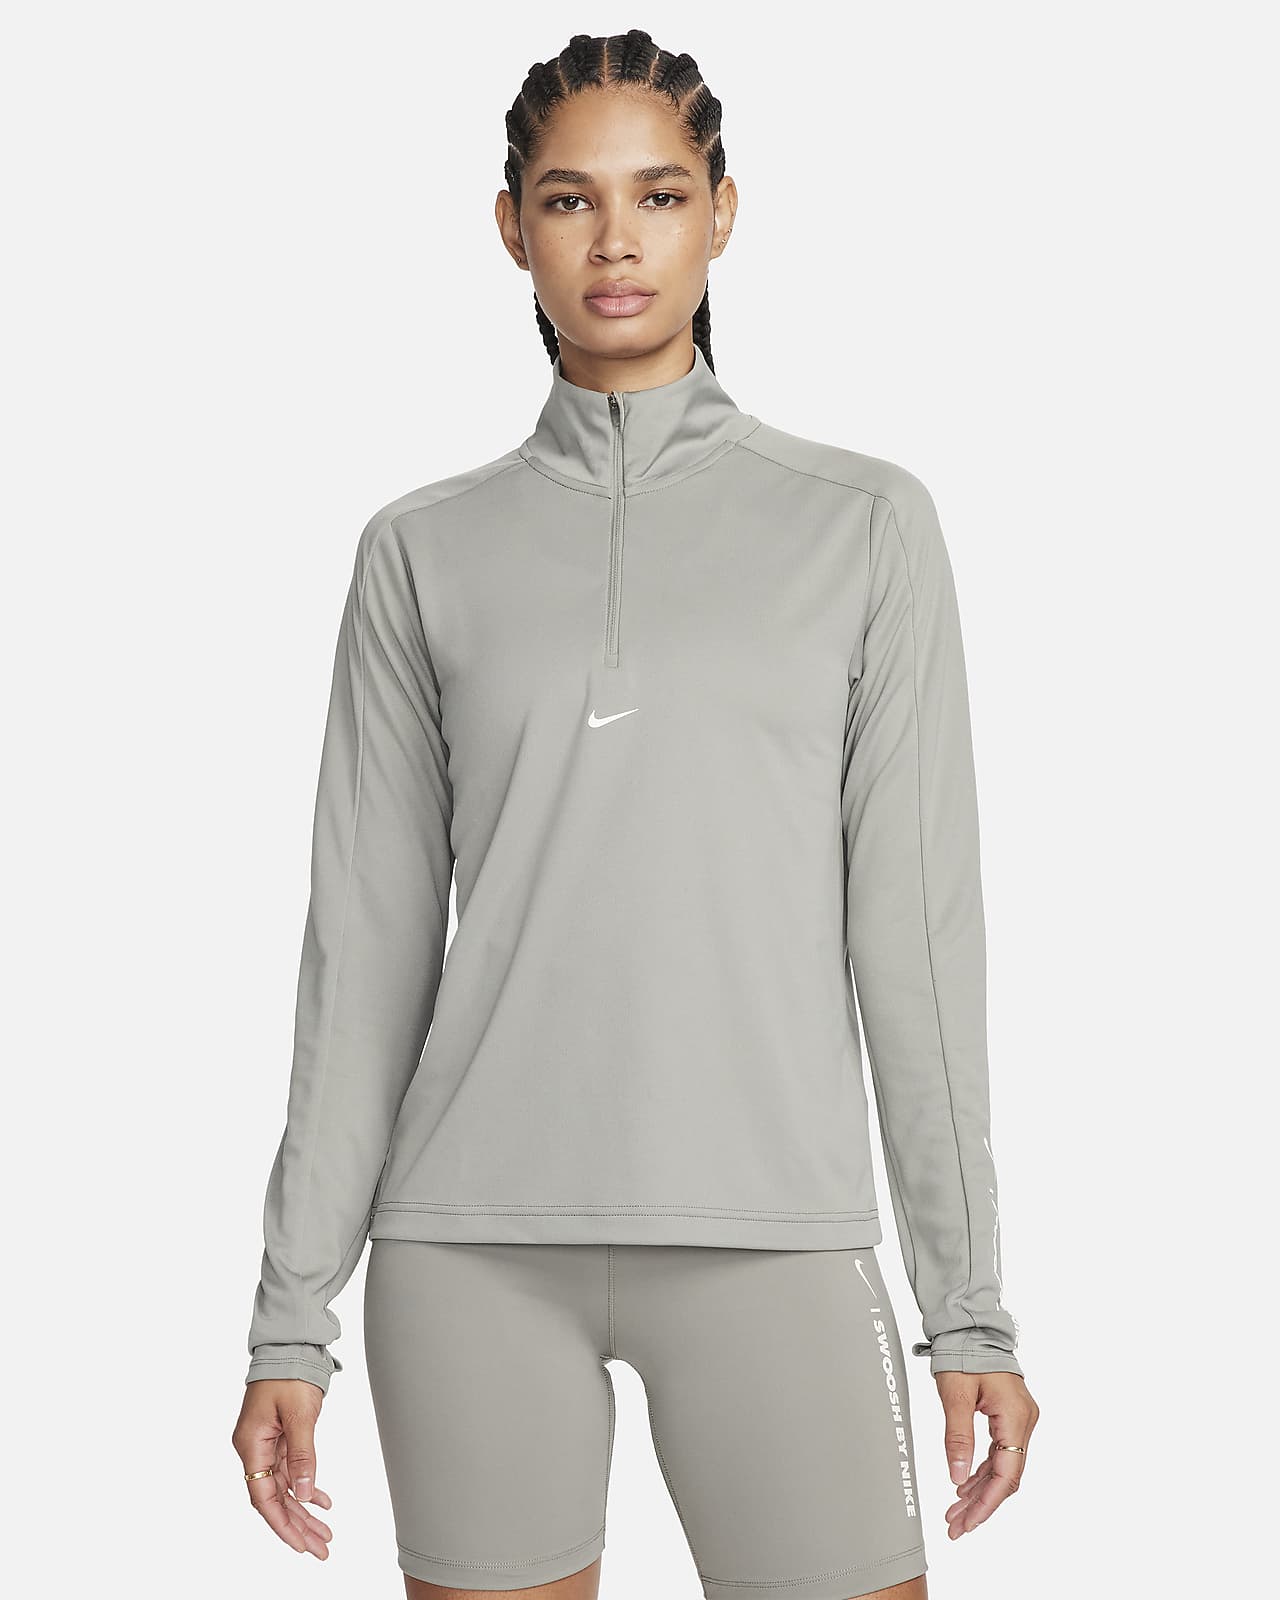 Tröja Nike Pacer Dri-FIT med kvartslång dragkedja för kvinnor